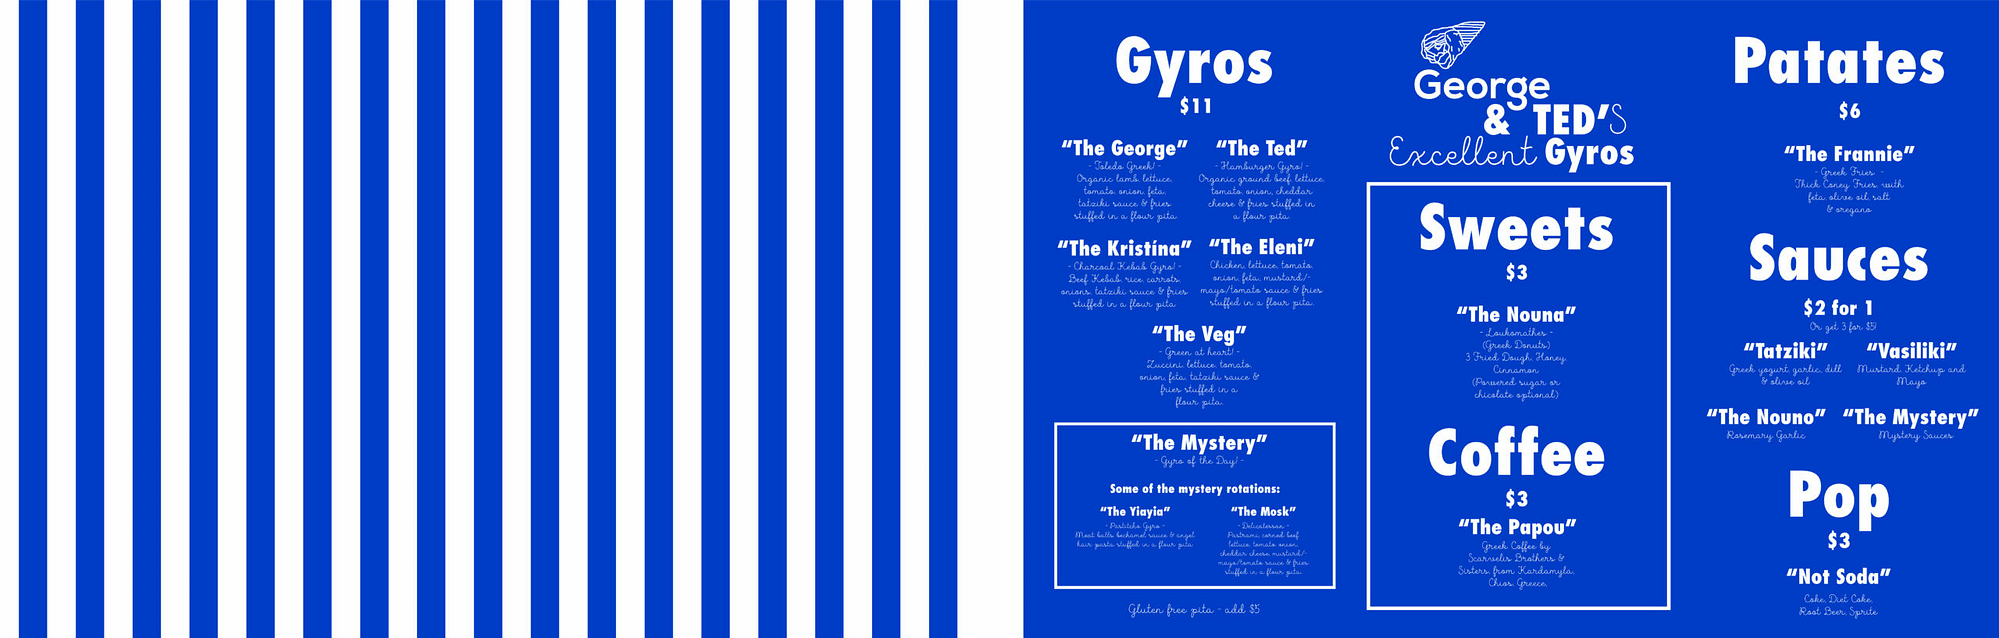 George's-Gyros-Menu